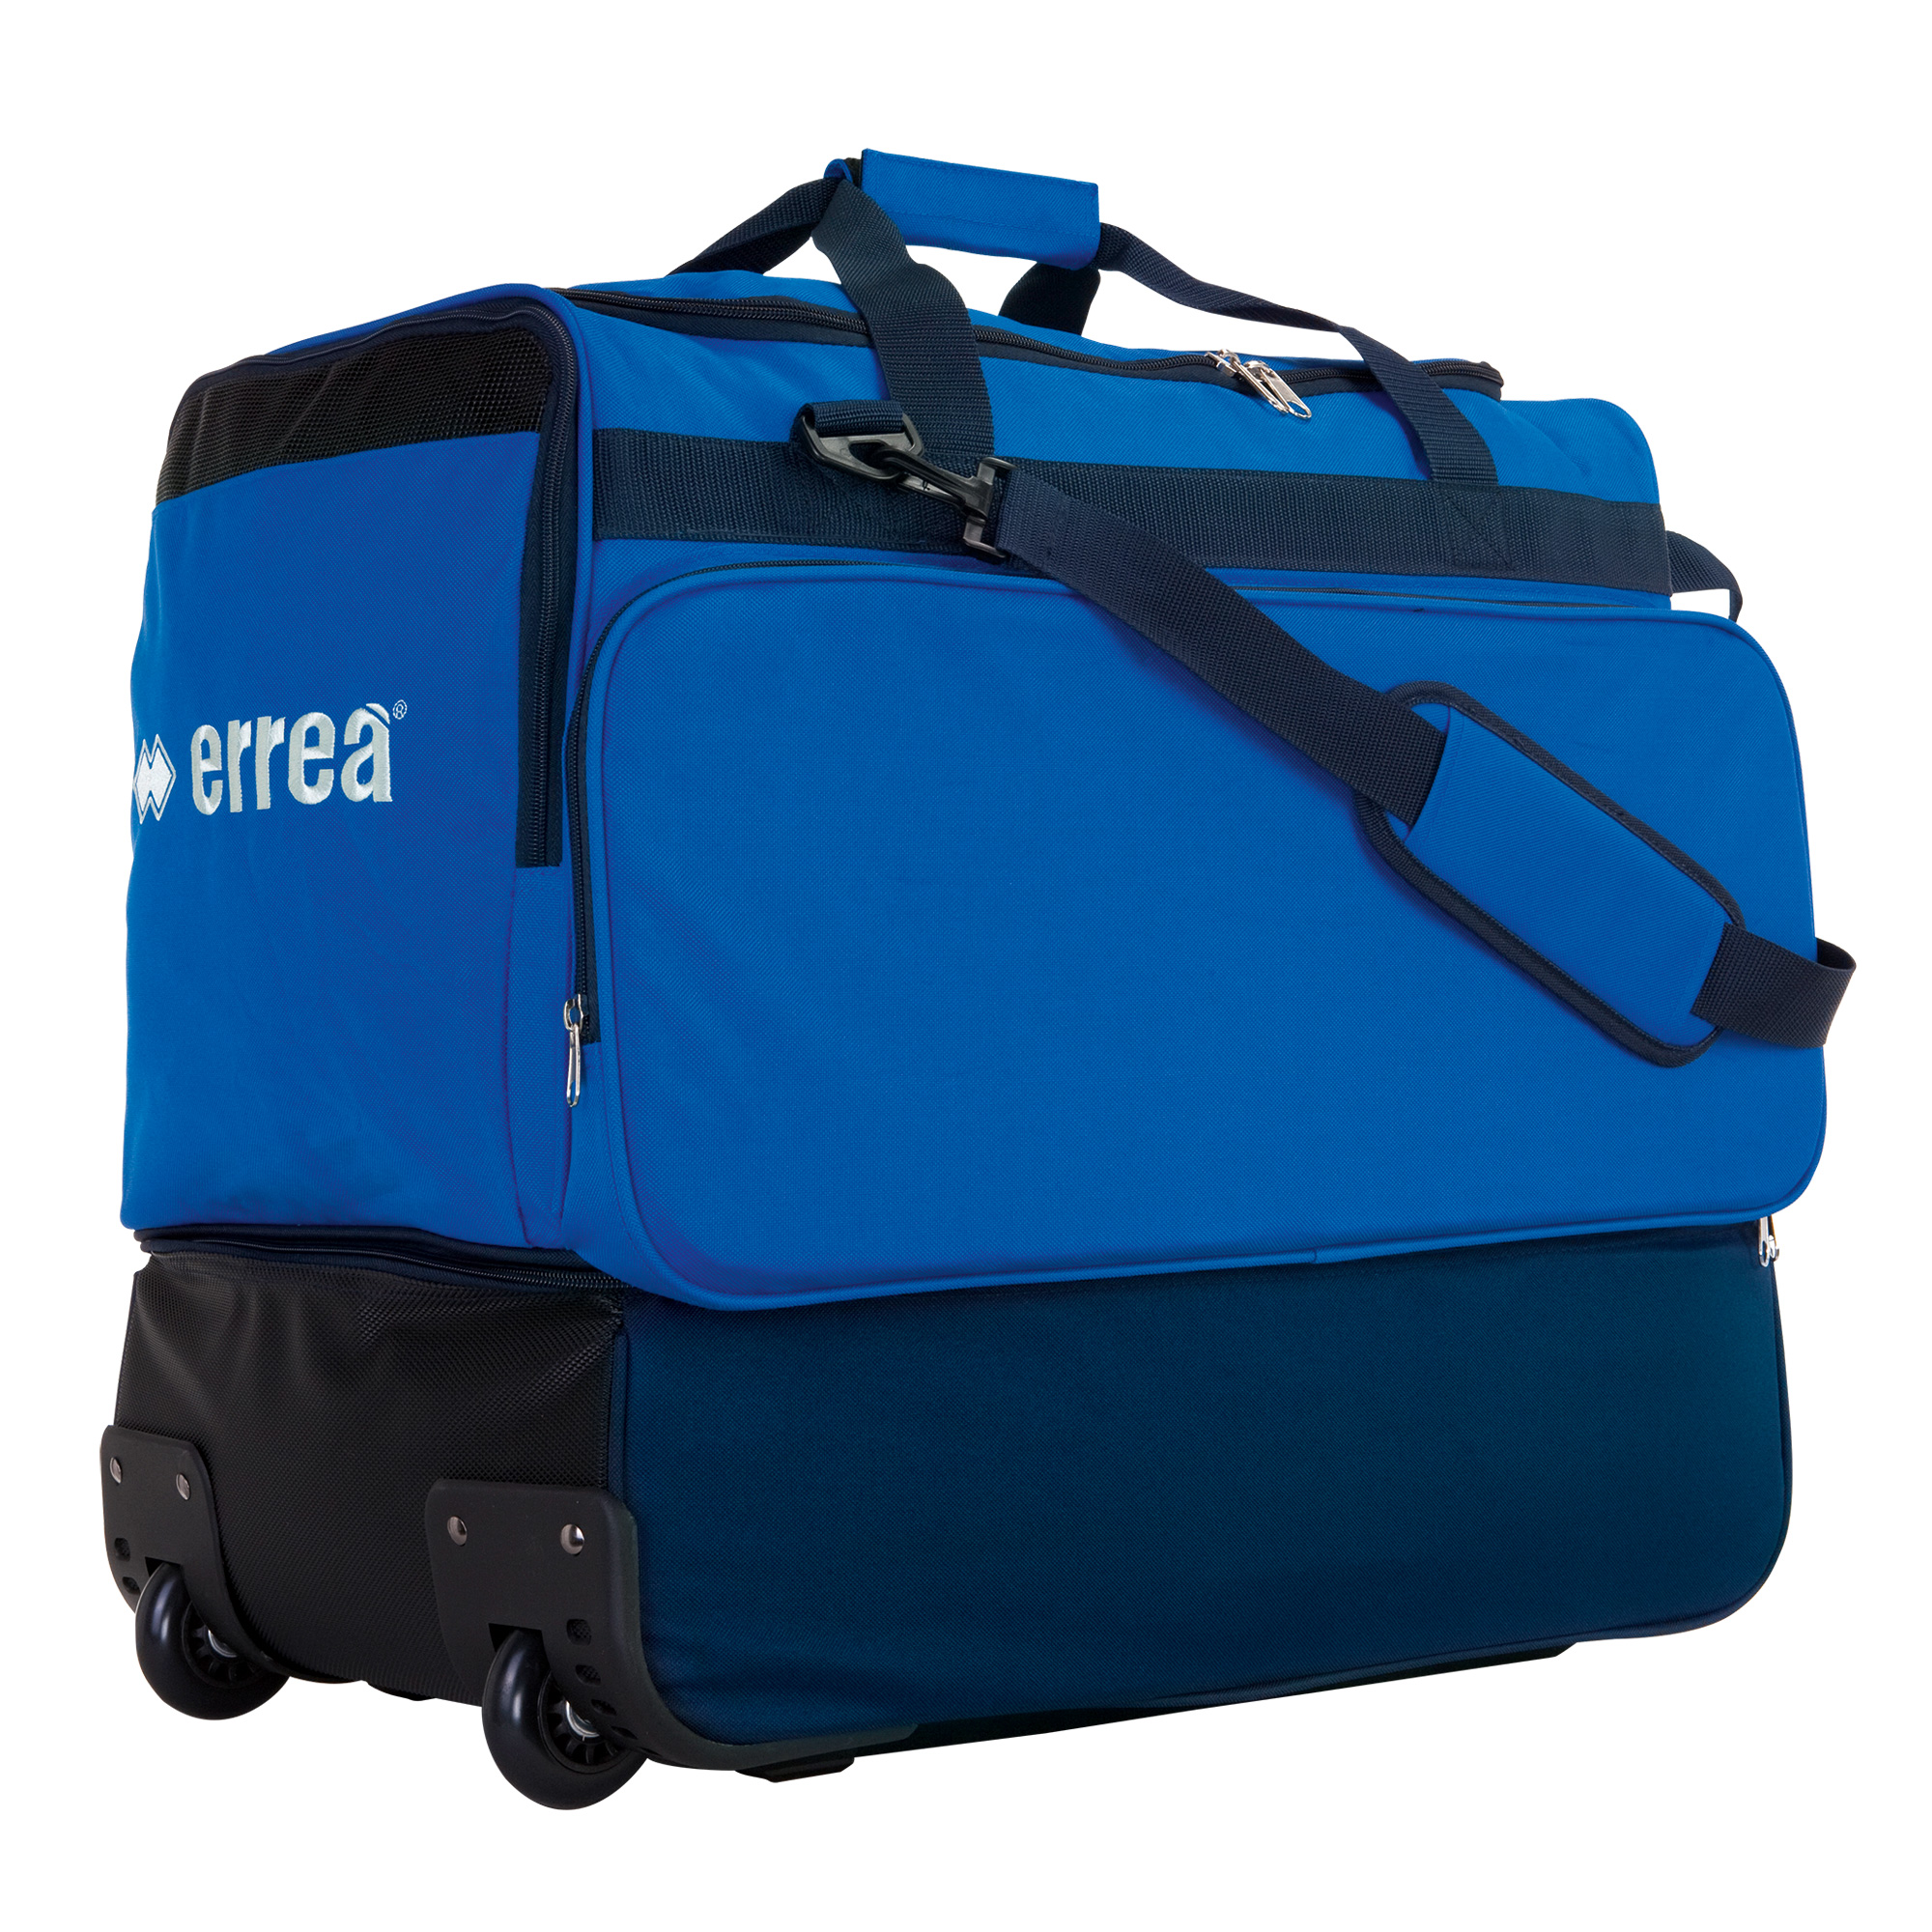 ERREA sportovní taška s dvojitým dnem a pojezdem PRO BARVA: modrá - tmavě modrá